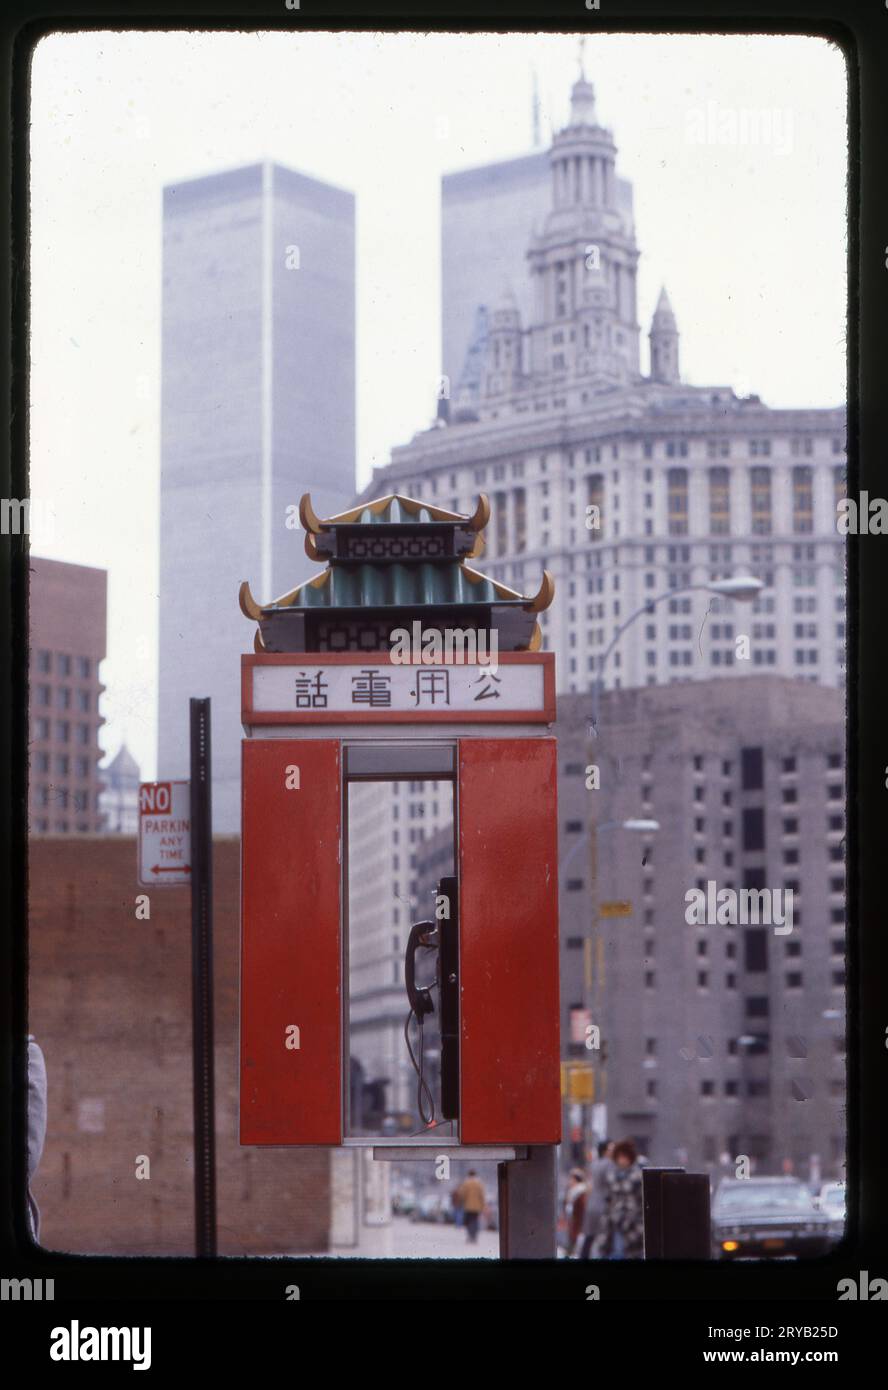 Ein Foto aus dem Jahr 1978 von einer öffentlichen Telefonkabine im Freien, geformt wie eine Pagode und mit chinesischer Schrift. Das Rathaus, das MCC-Gefängnis und die Twin Towers sind im Hintergrund. Stockfoto